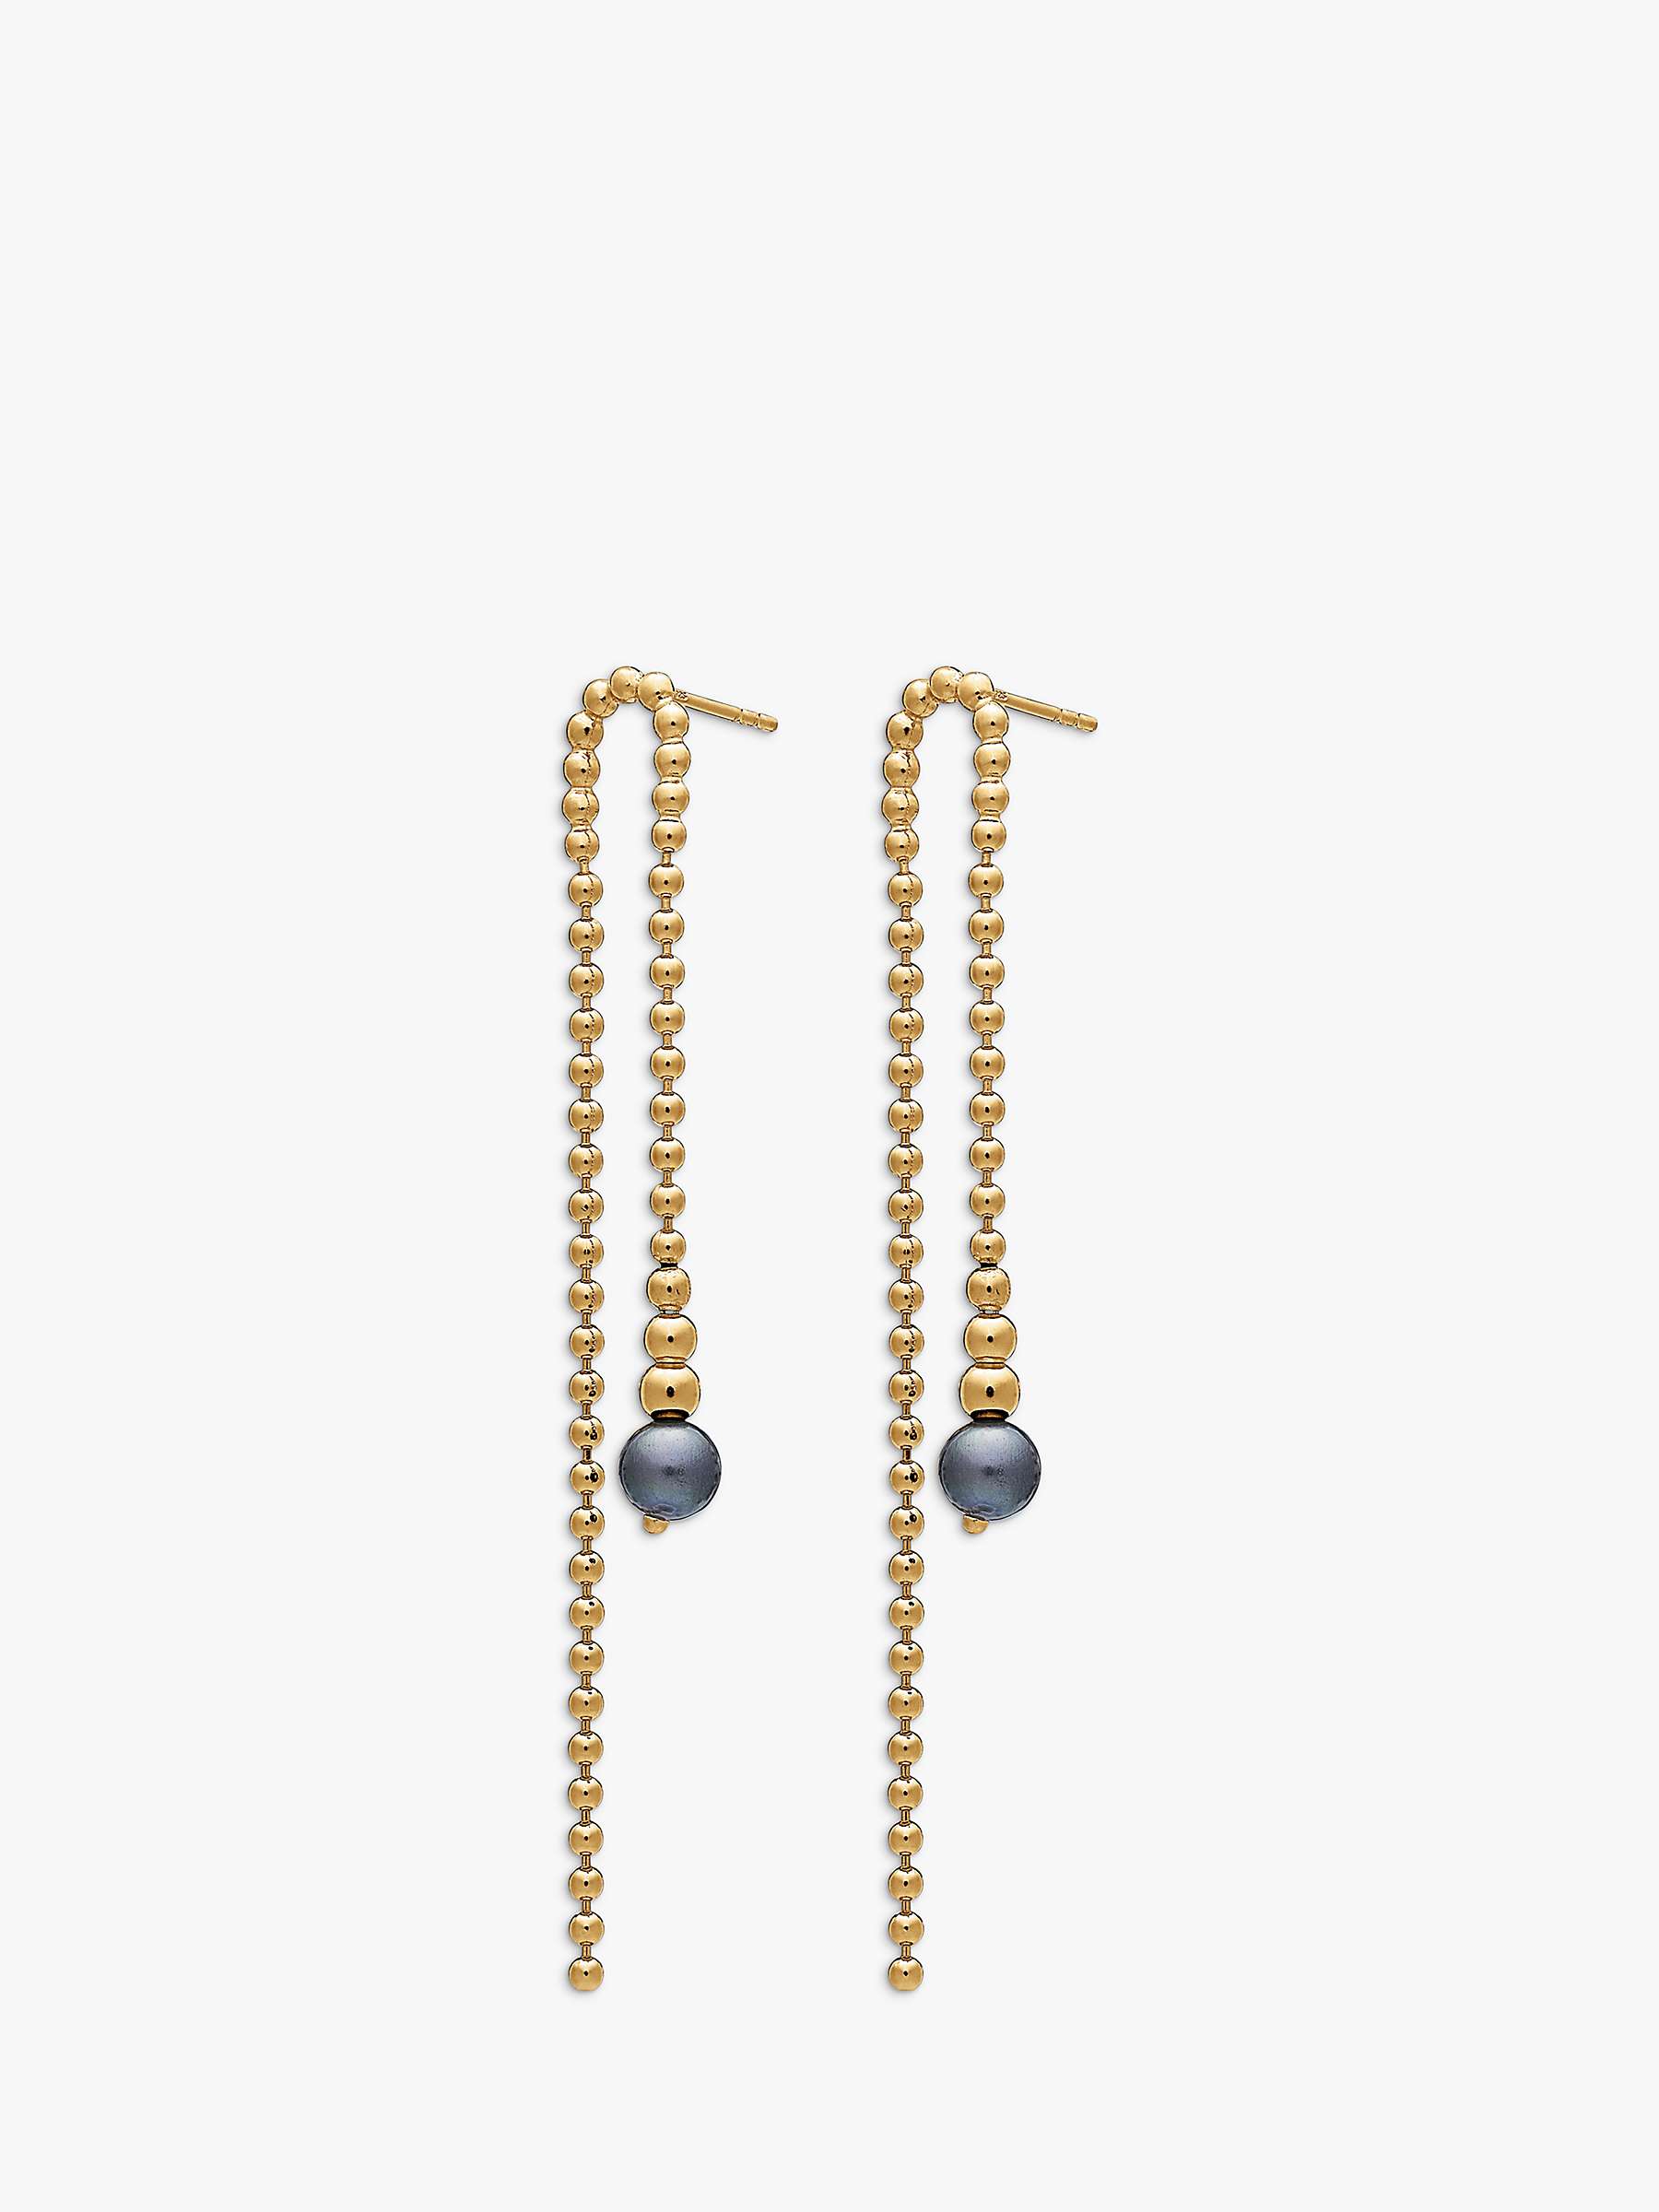 Buy Rachel Jackson London Stellar Orb Drop Black Pearl Earrings, Gold Online at johnlewis.com